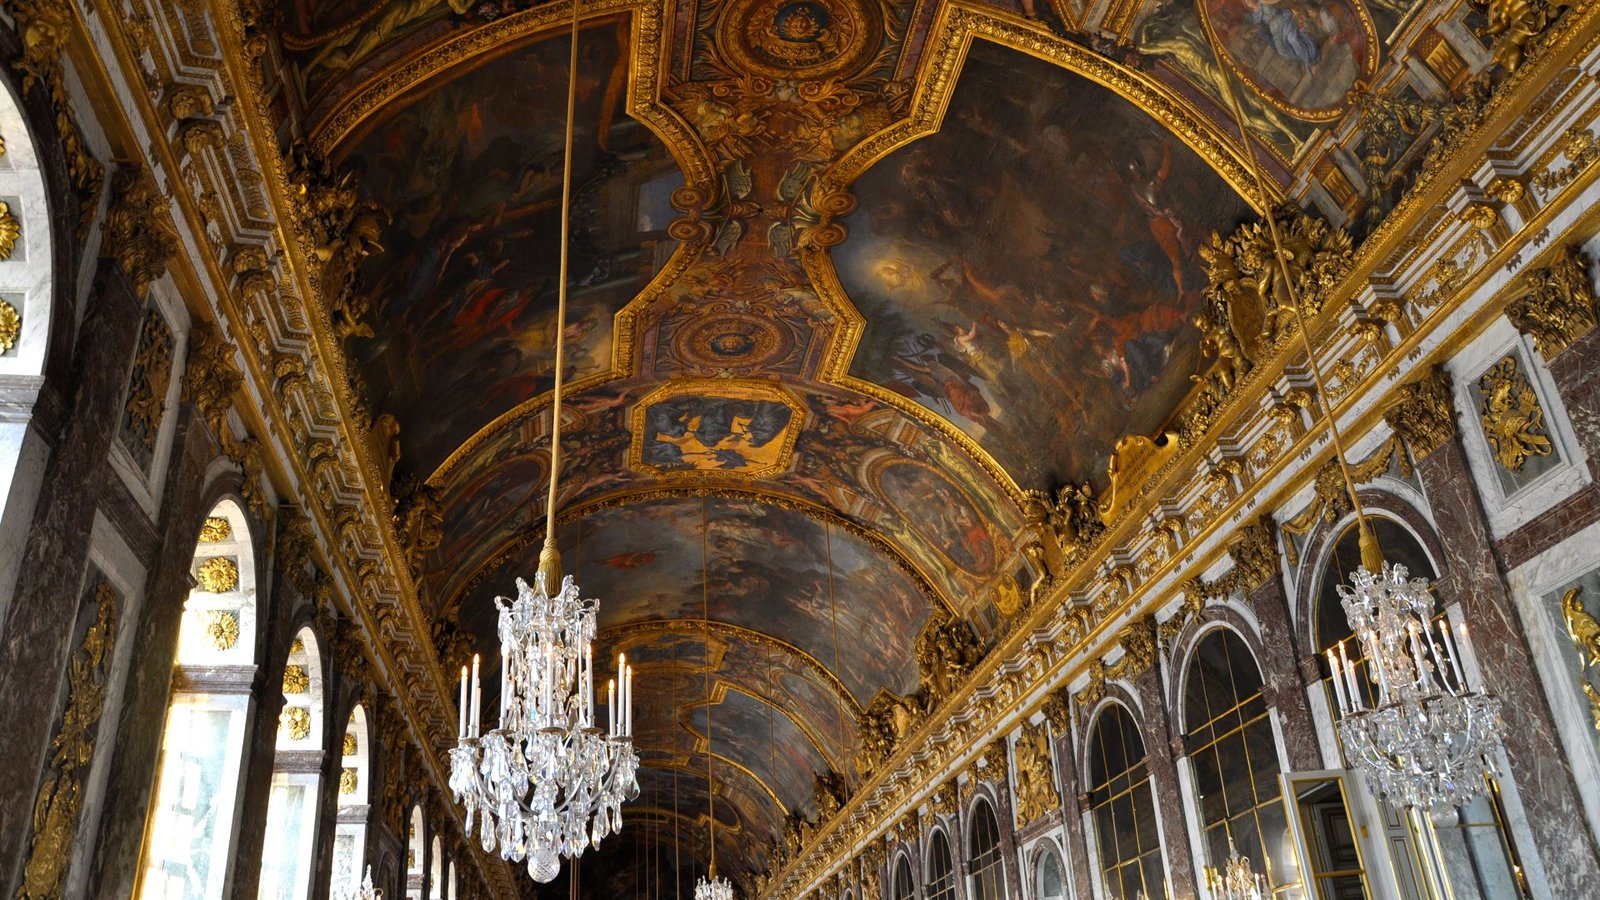 The Splendor of Versailles